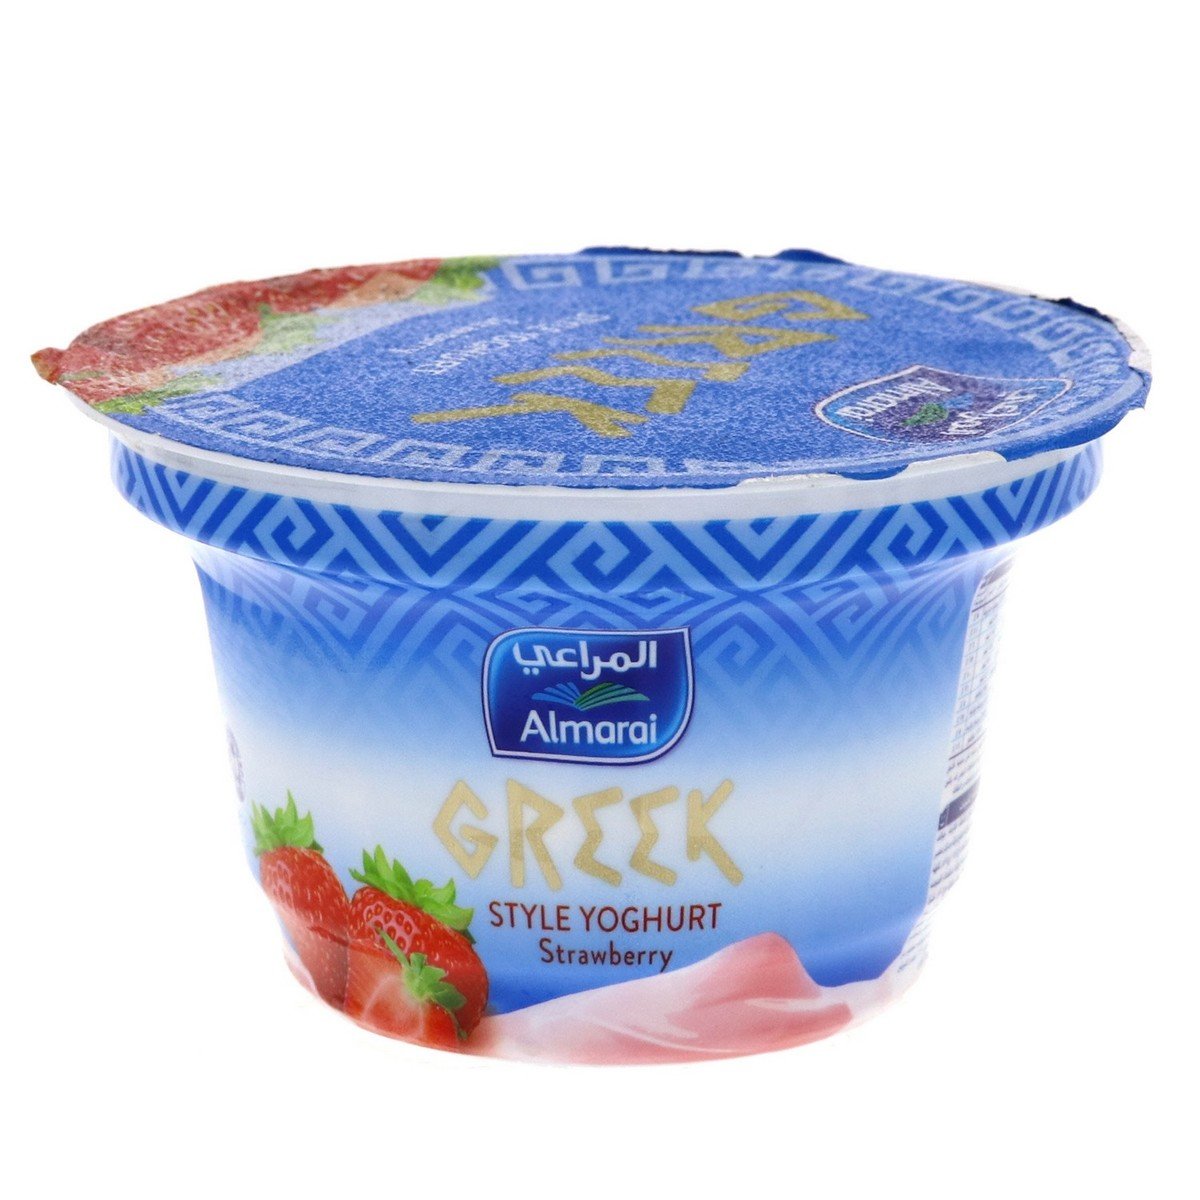 اشتري قم بشراء المراعي زبادي يوناني مع الفراولة 150جم Online at Best Price من الموقع - من لولو هايبر ماركت Flavoured Yoghurt في الامارات